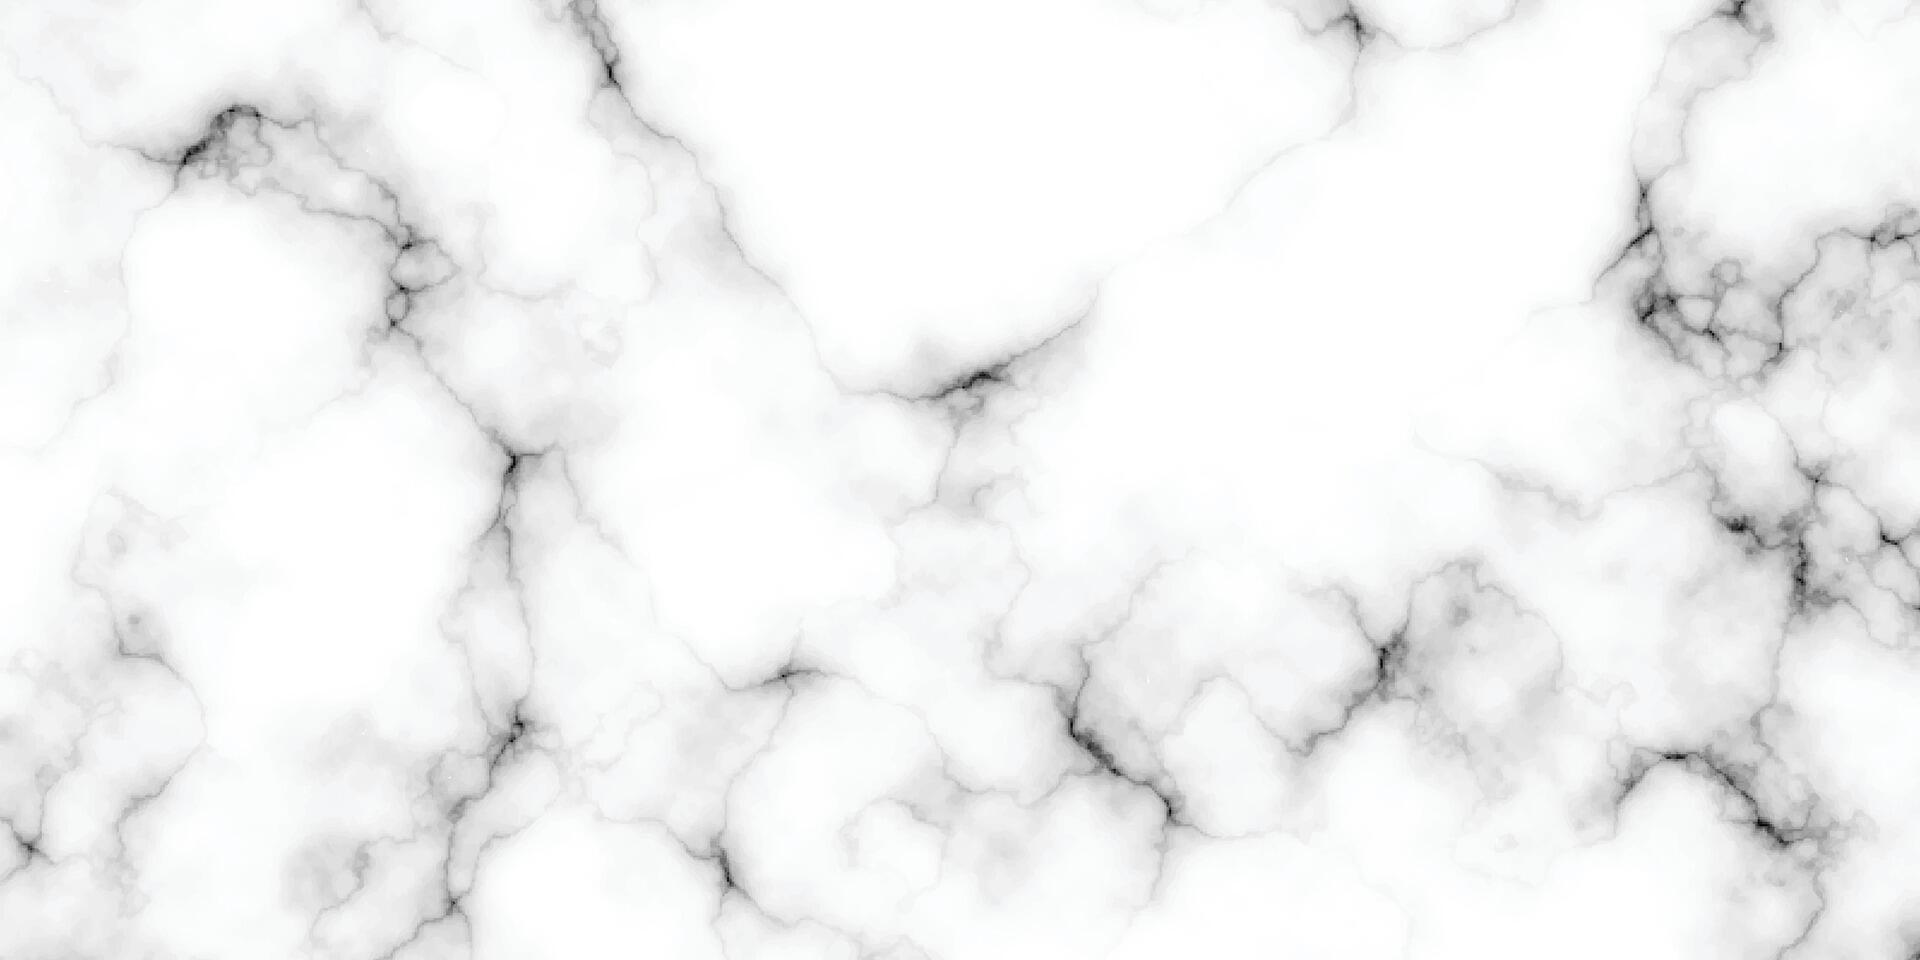 textura de fondo de mármol blanco patrón de piedra natural.resumen luz elegante negro para hacer piso textura de mostrador de cerámica losa de piedra azulejo liso gris plata.textura de mármol para azulejo de piel diseño lujoso vector